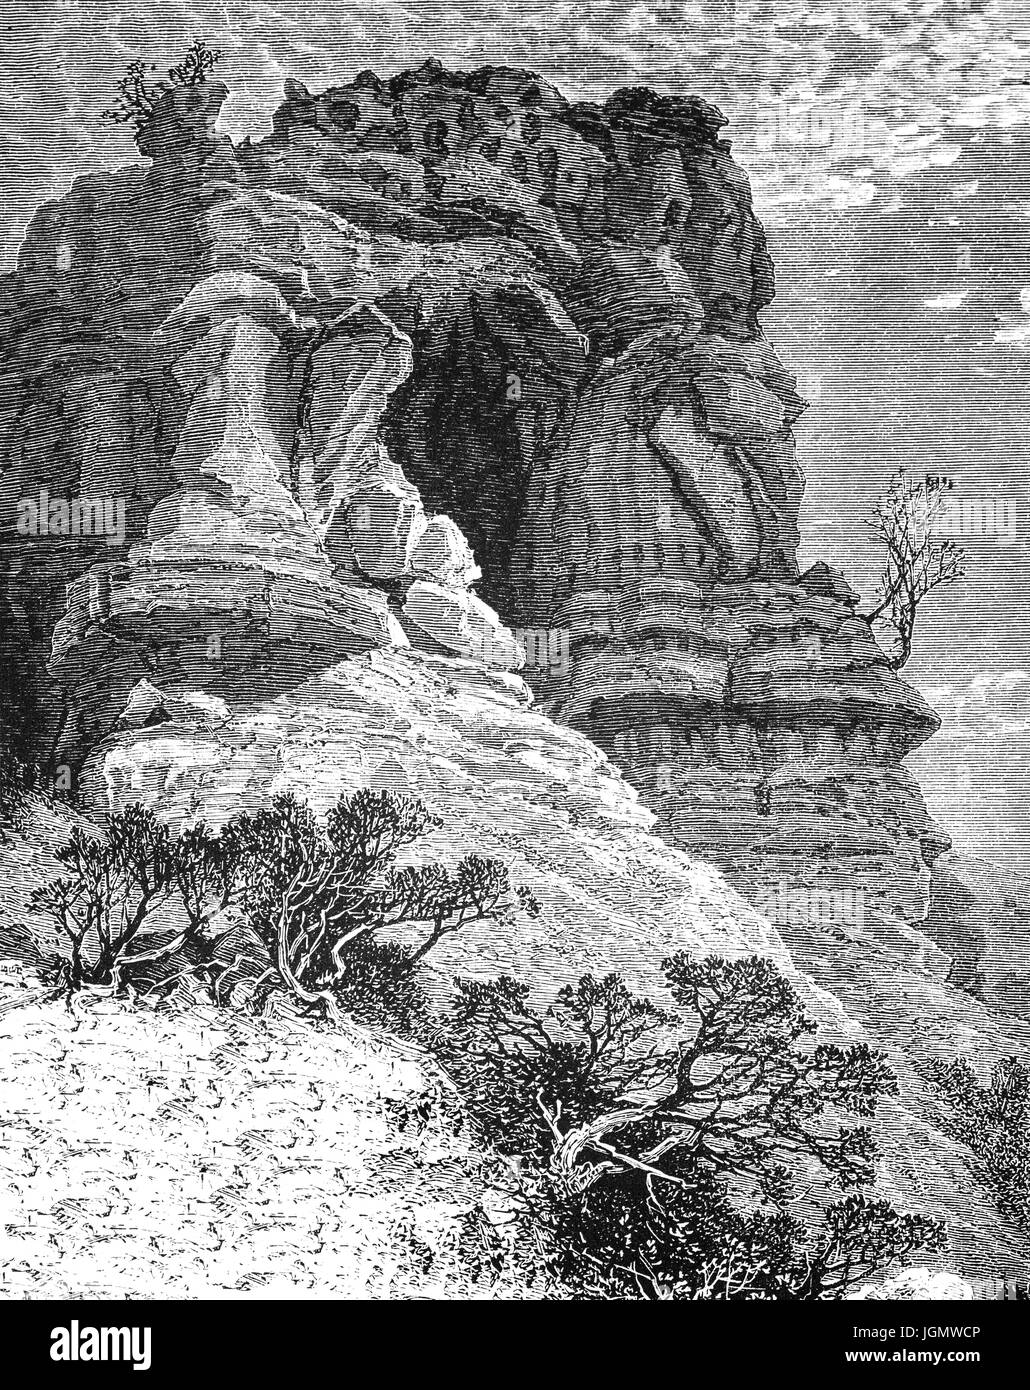 1879: castle Rock in der Sierra Nevada Berge, Kalifornien, Vereinigte Staaten von Amerika Stockfoto